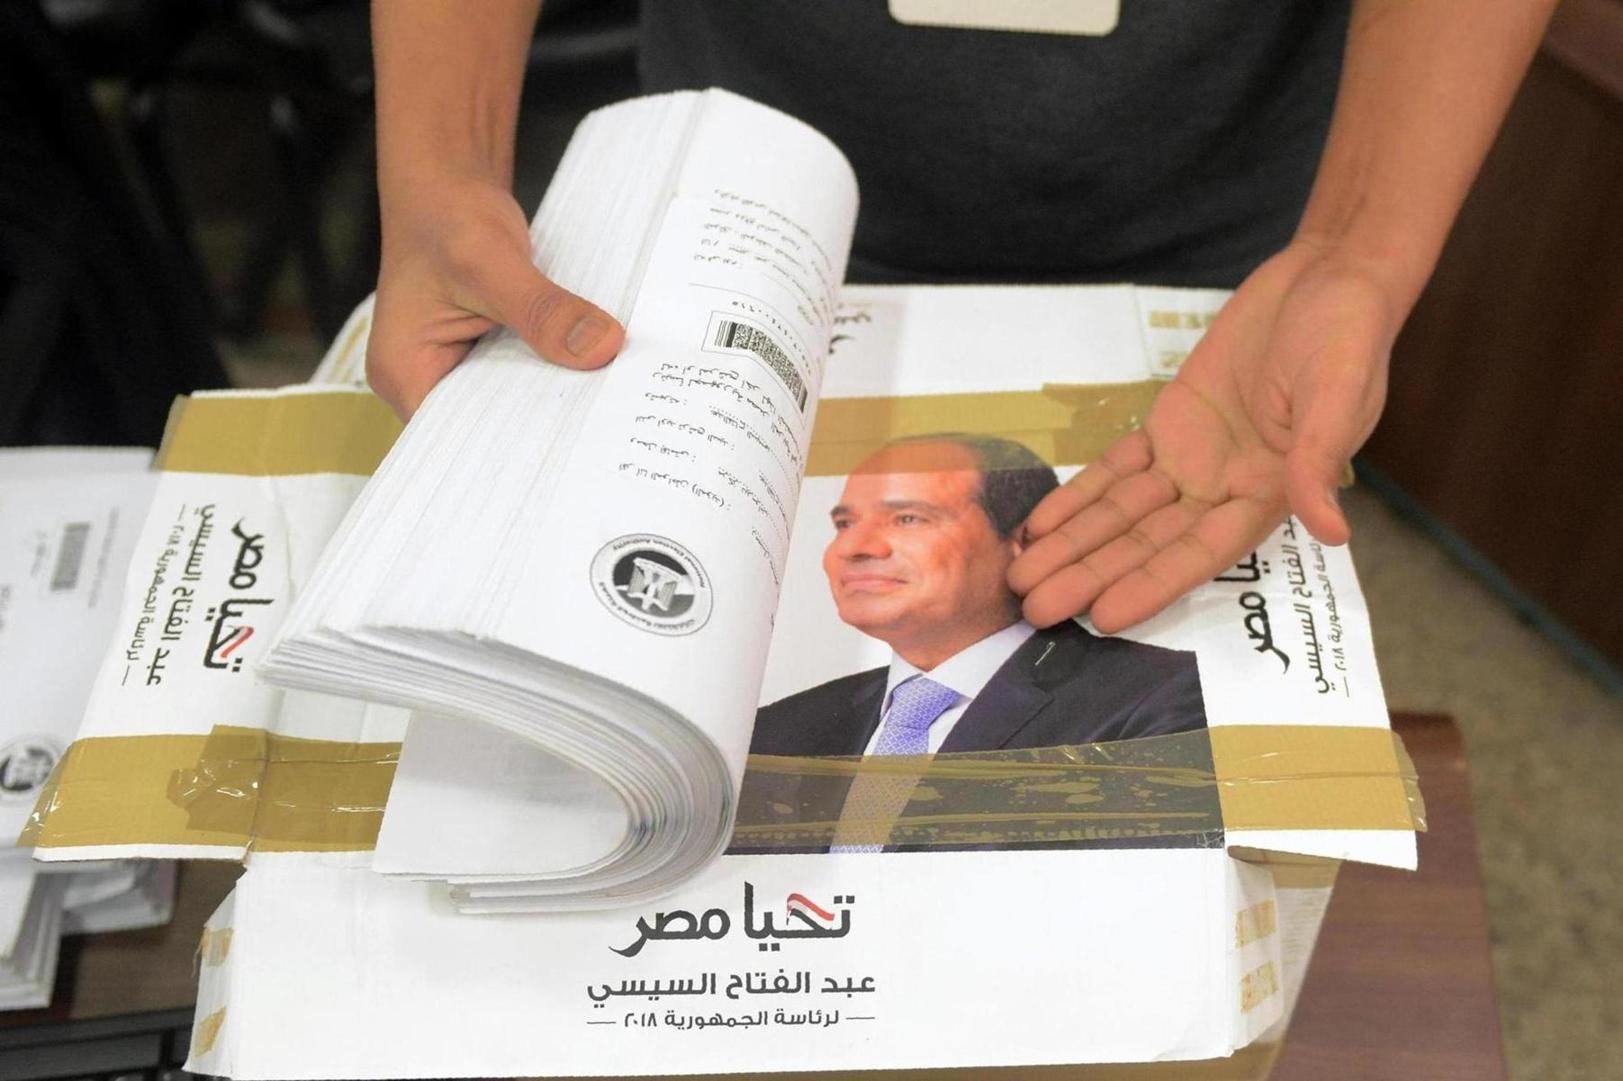 الانتخابات في مصر: من الفائز؟